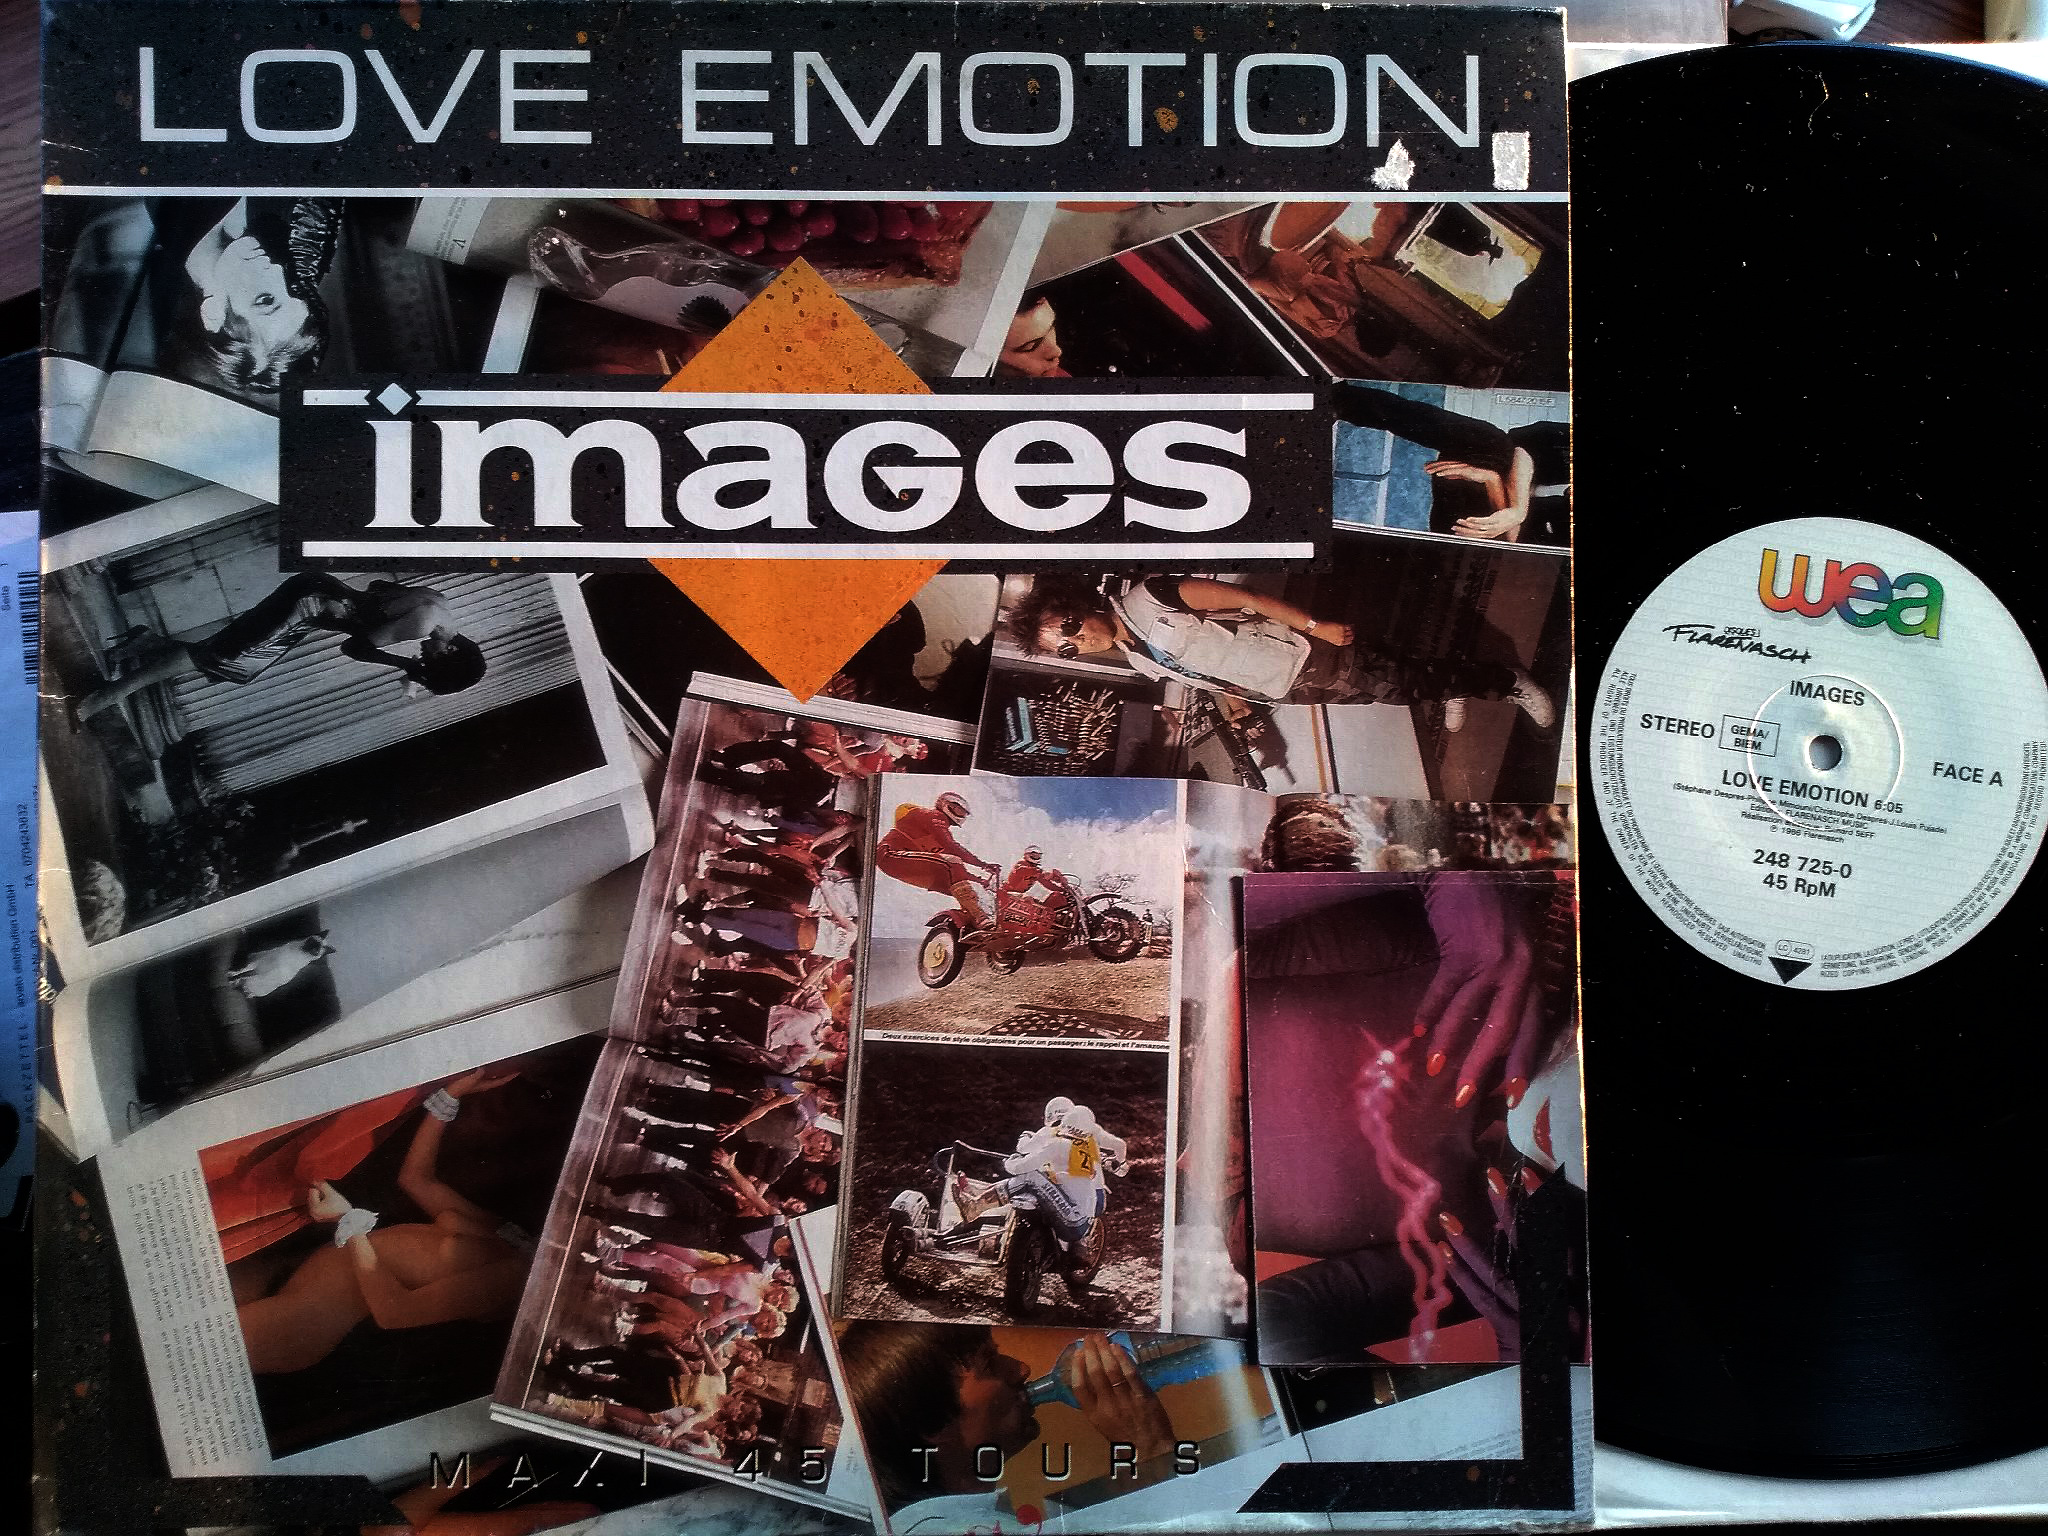 Images - Love Emotion